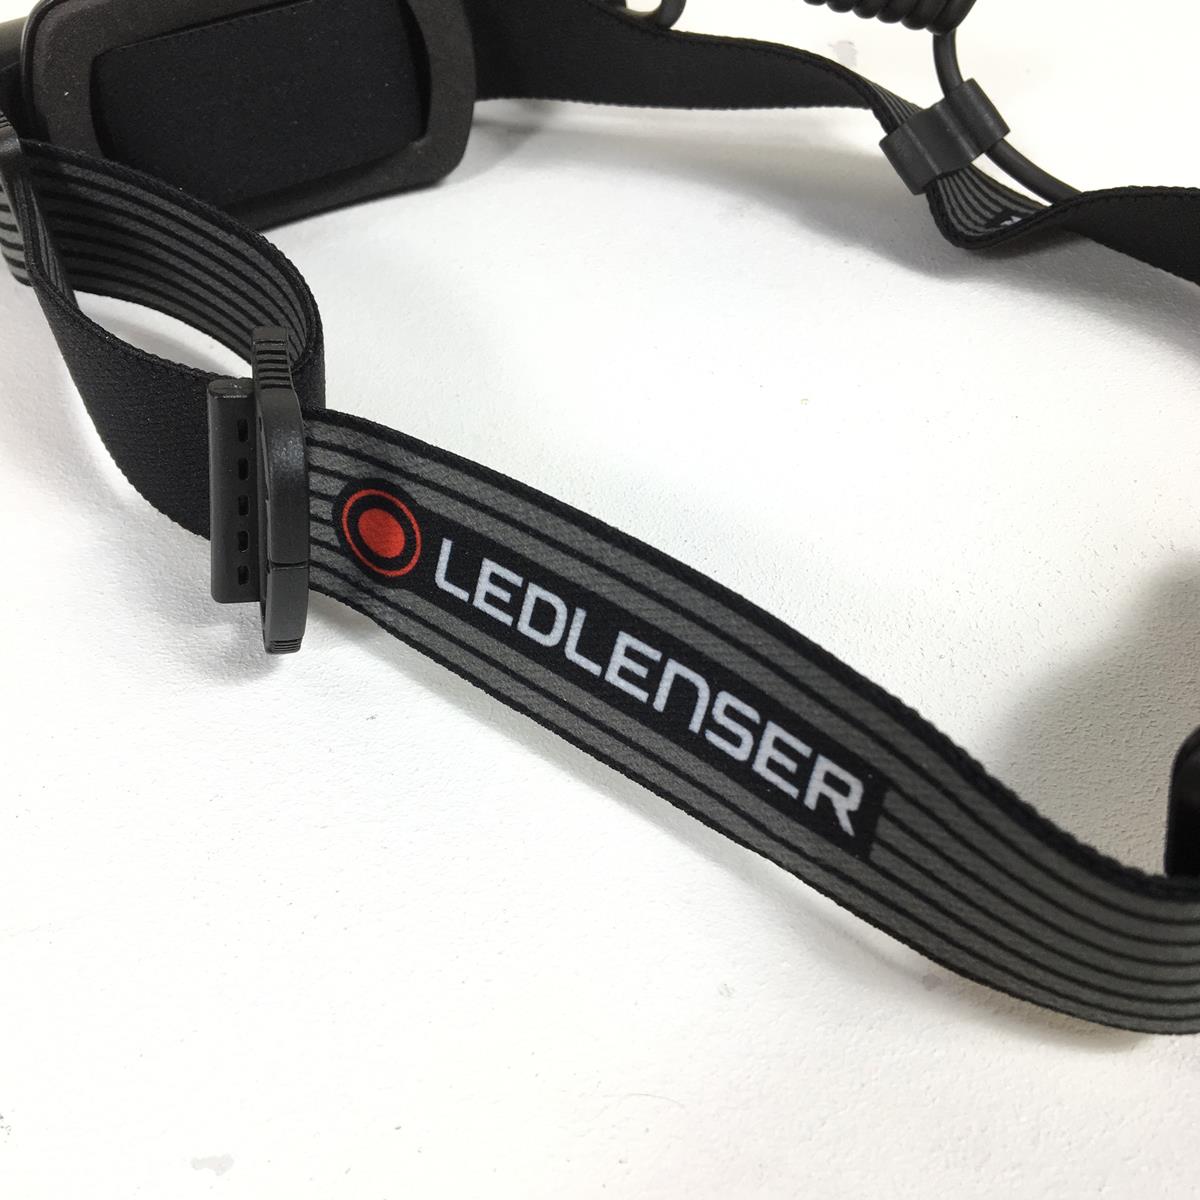 レッドレンザー H8R SE 700ルーメン ヘッドランプ 公式ショップ限定モデル エクスクルーシブモデル LEDLENSER 502421 ブラック系